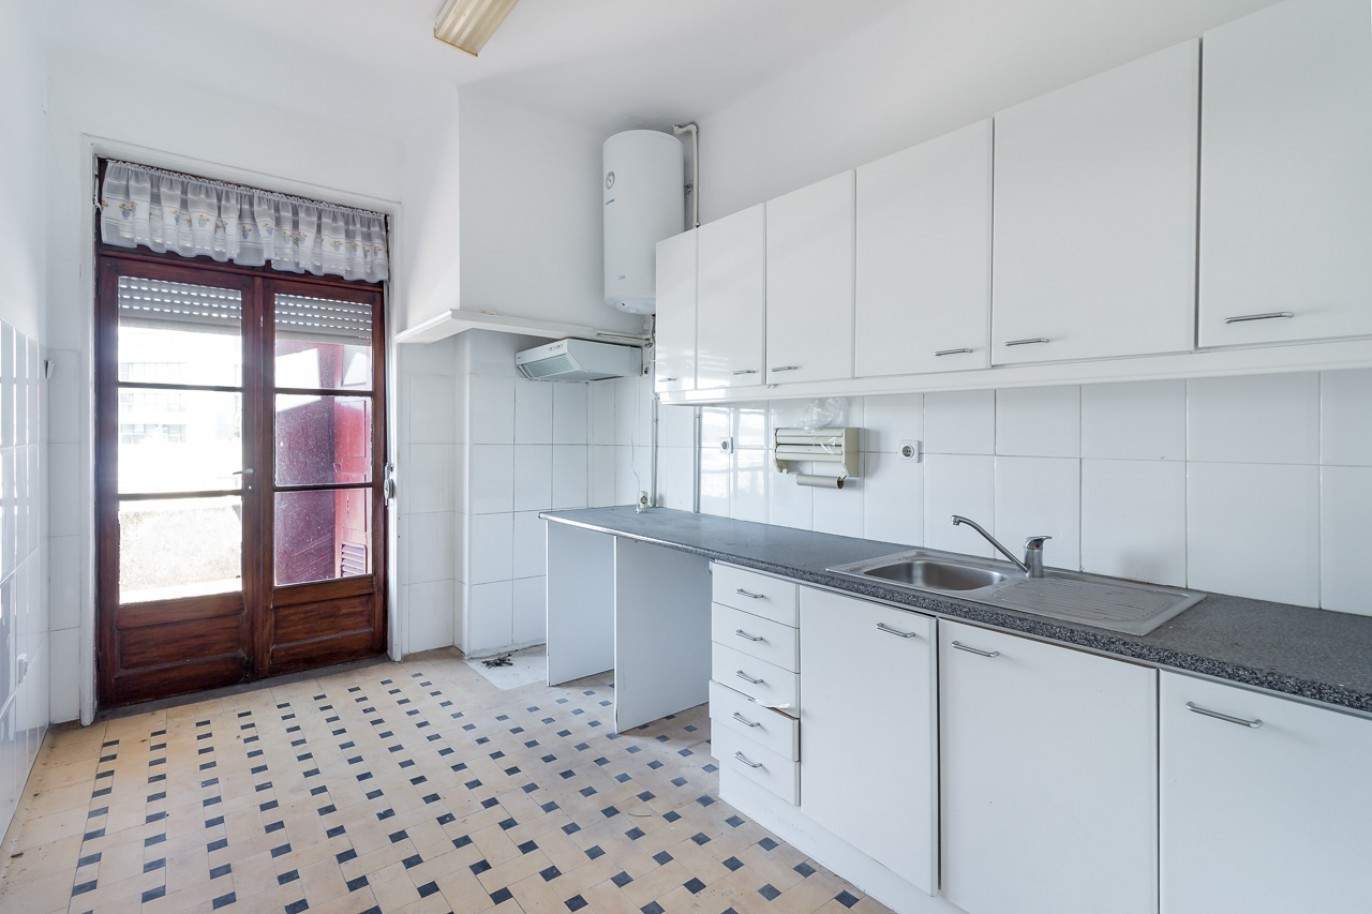 Prédio para venda com 4 apartamentos, Porto_85191